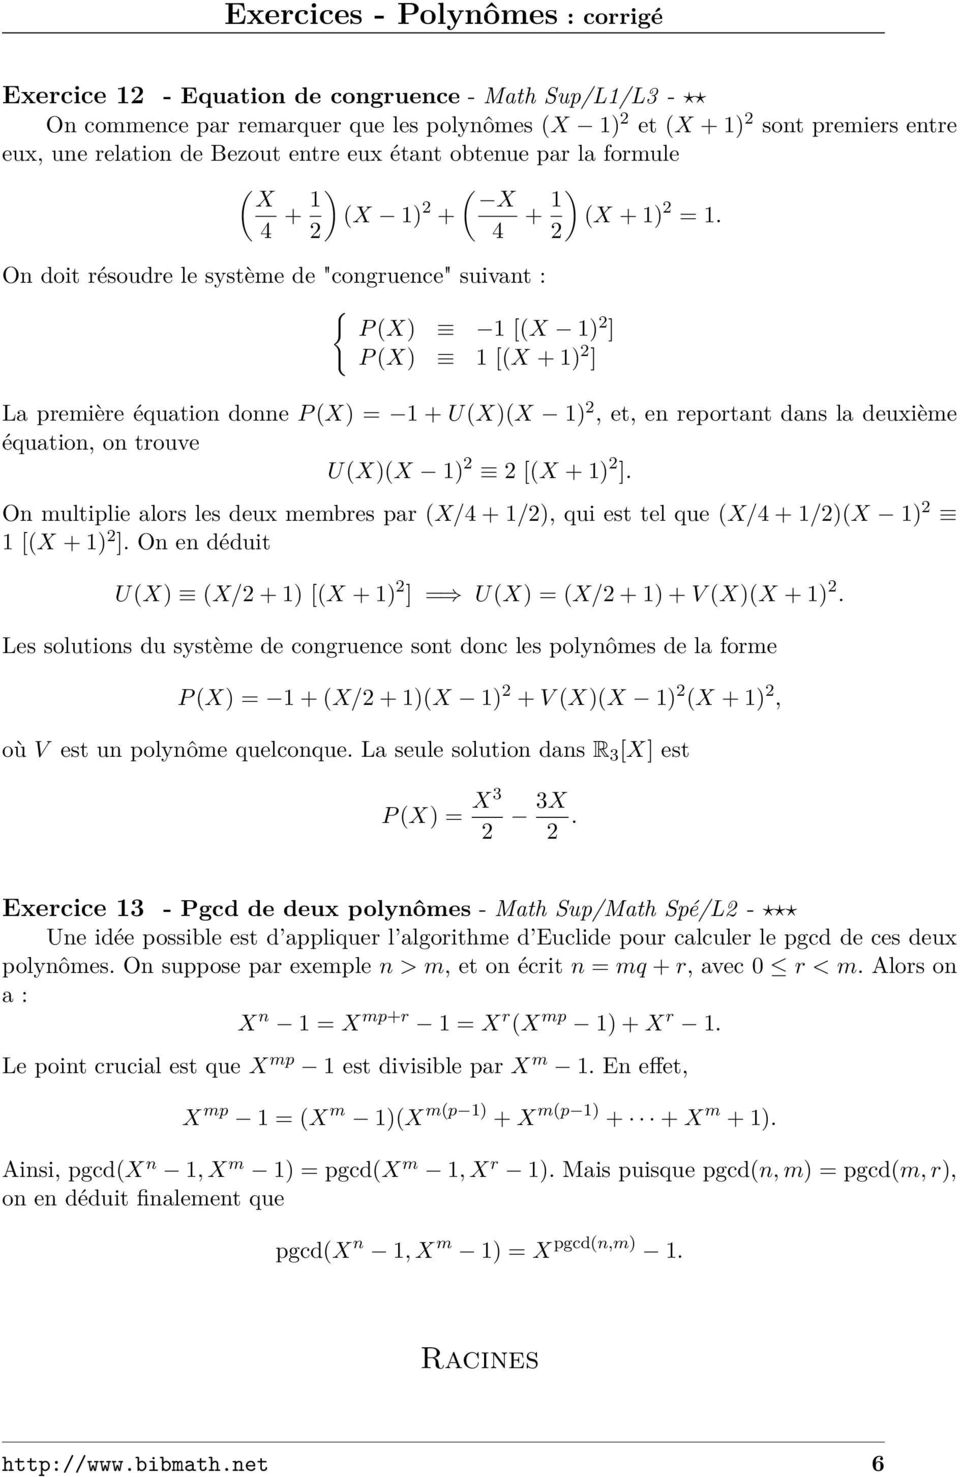 On doit résoudre le système de "congruence" suivant : { P (X) 1 [(X 1) ] P (X) 1 [(X + 1) ] La première équation donne P (X) = 1 + U(X)(X 1), et, en reportant dans la deuxième équation, on trouve